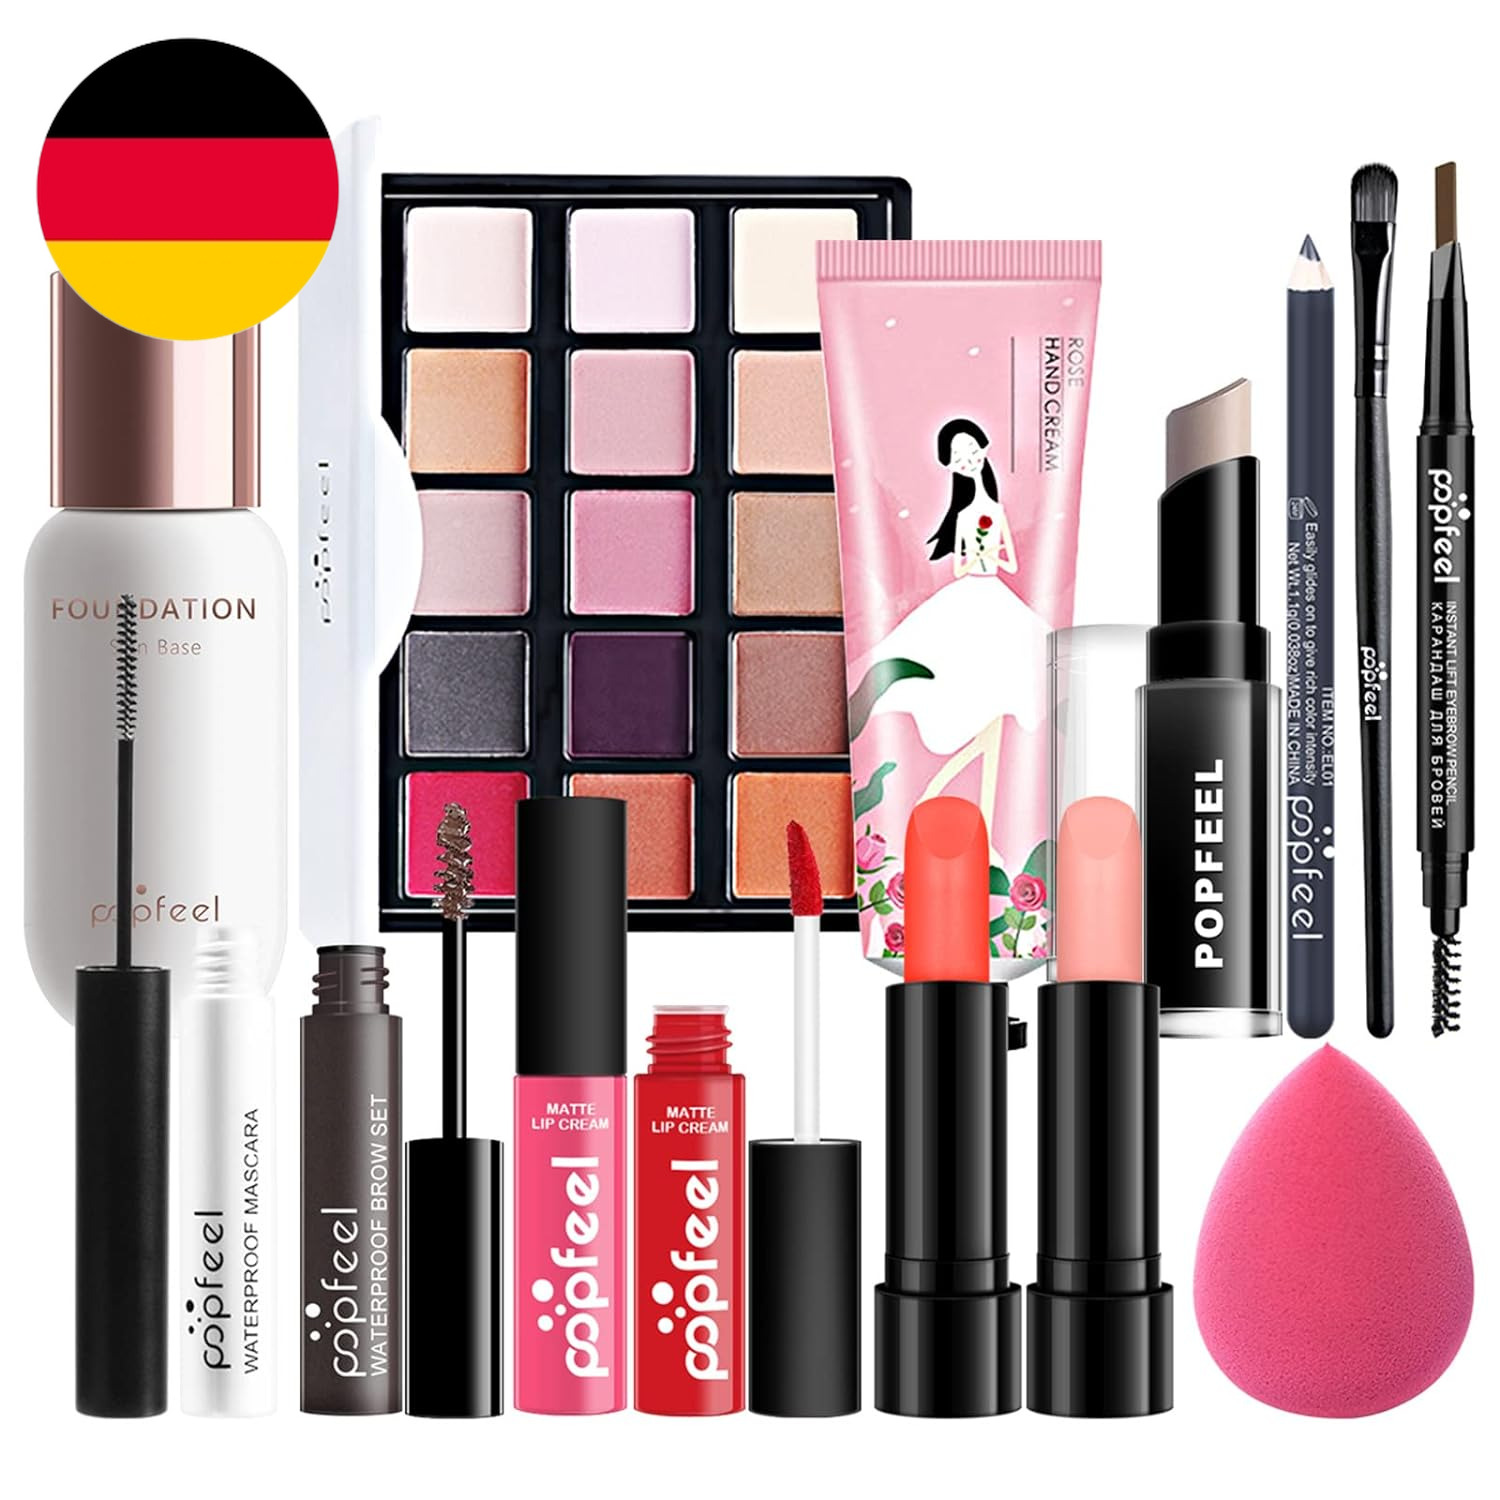 Make-Up-Geschenkset Kosmetik-Palette Starter Kit Schminke Set, Make-Up Sets Mit 